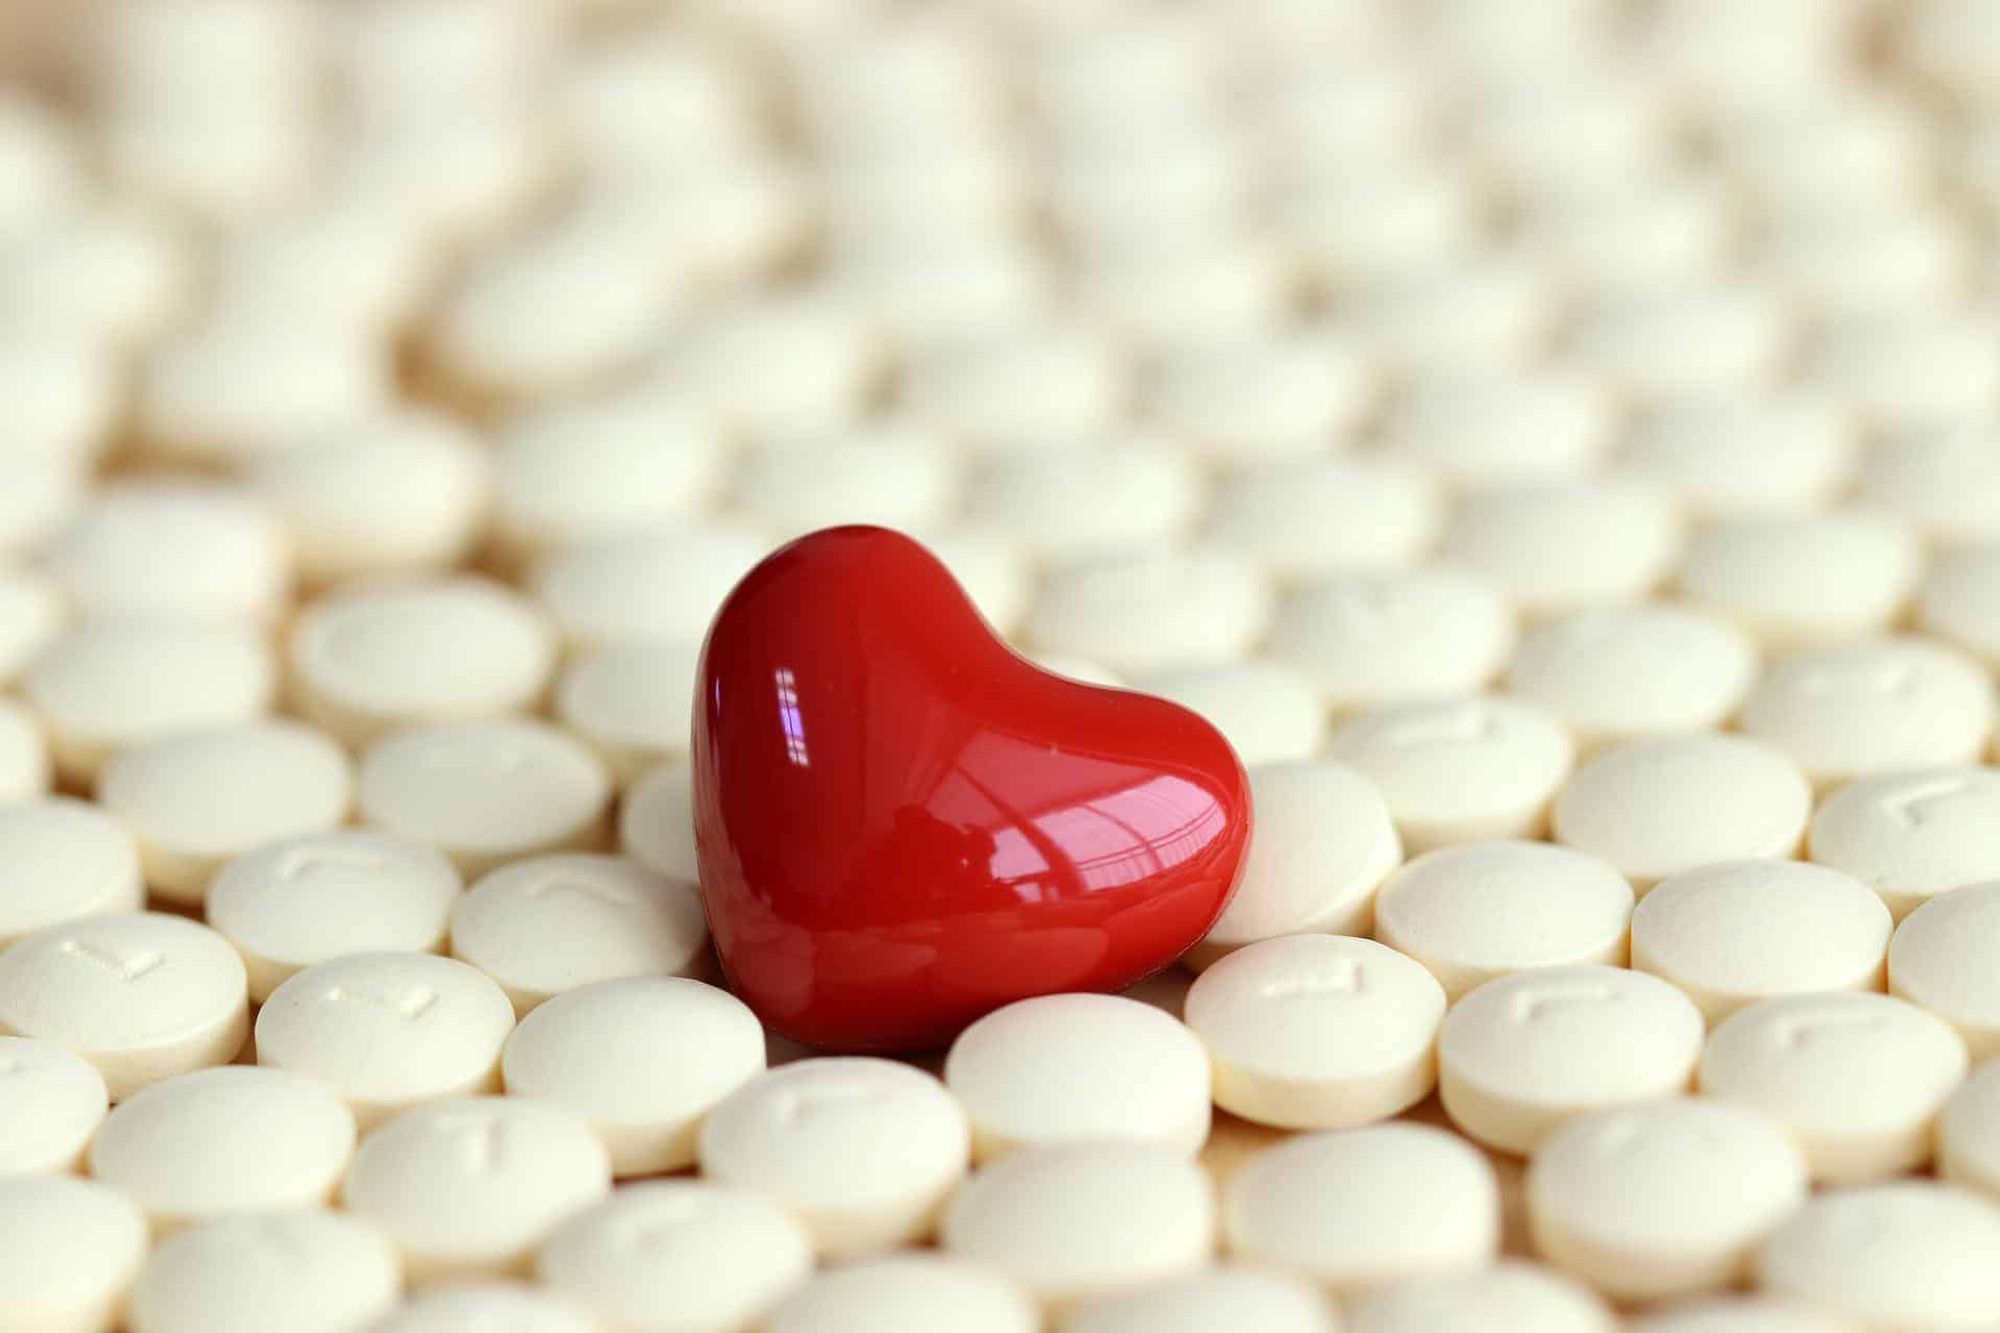 Maladies cardio-vasculaires : un nouveau traitement 3 en 1 réduit considérablement le risque de décès